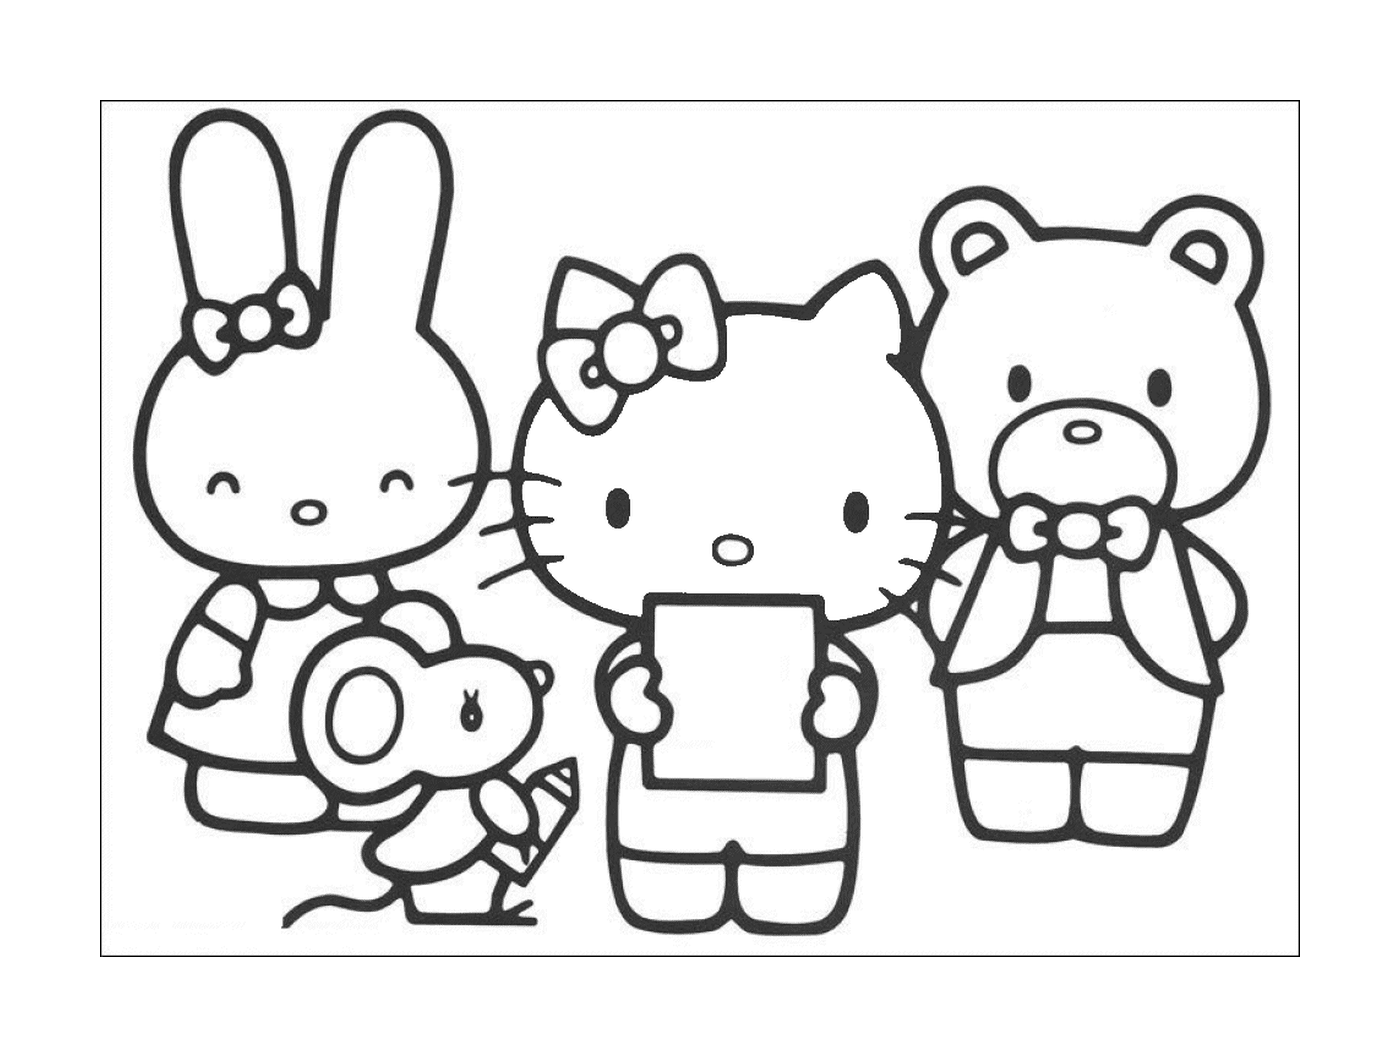  Um grupo de amigos Hello Kitty 